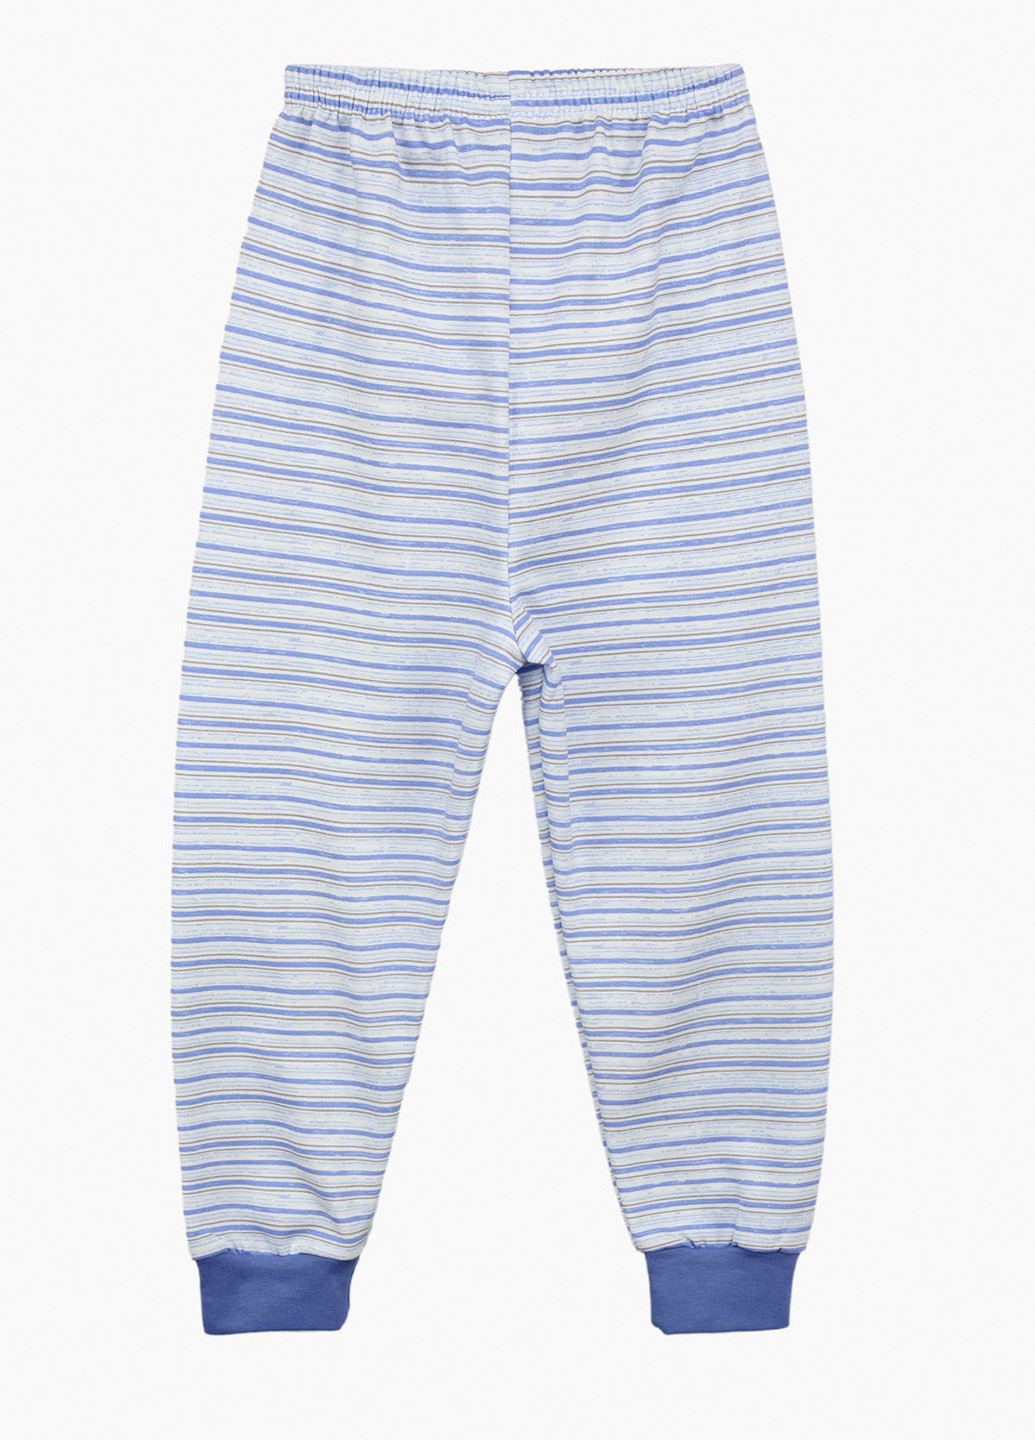 Голубая всесезон пижама (лонгслив, брюки) лонгслив + брюки Kazan